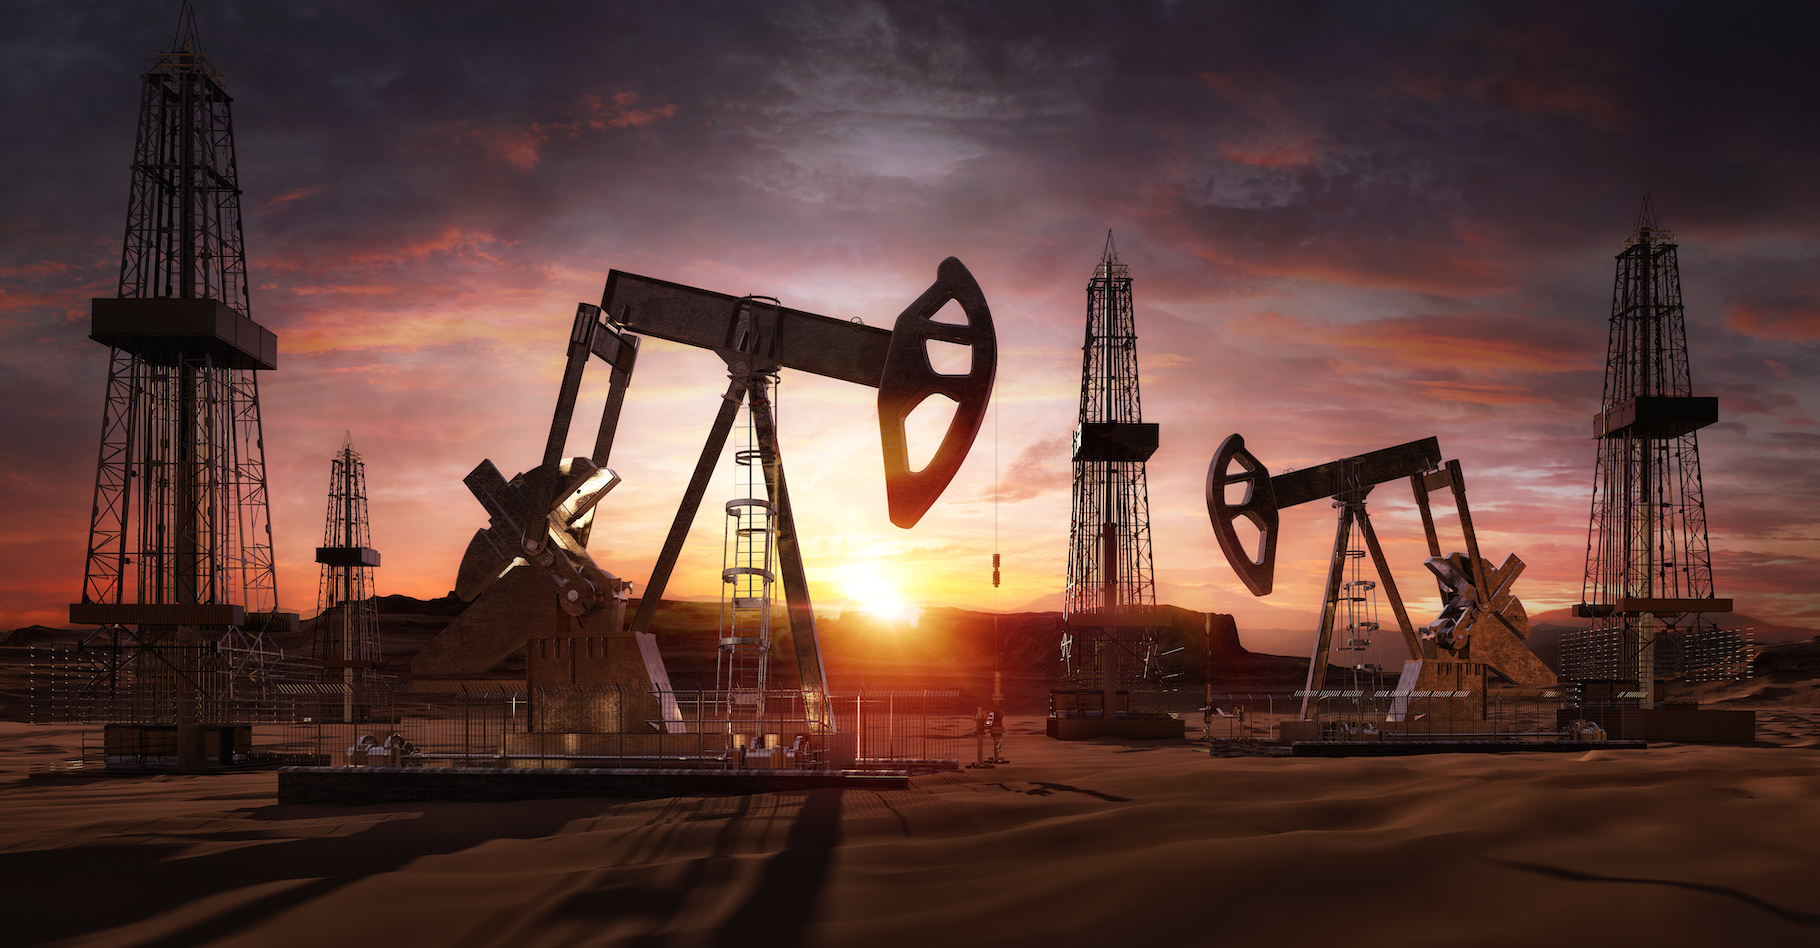 Le pétrole est une énergie fossile dont nous devons aujourd’hui apprendre à nous passer. Ce ne sera pas facile, mais nous pouvons y arriver. © Corona Borealis, Adobe Stock